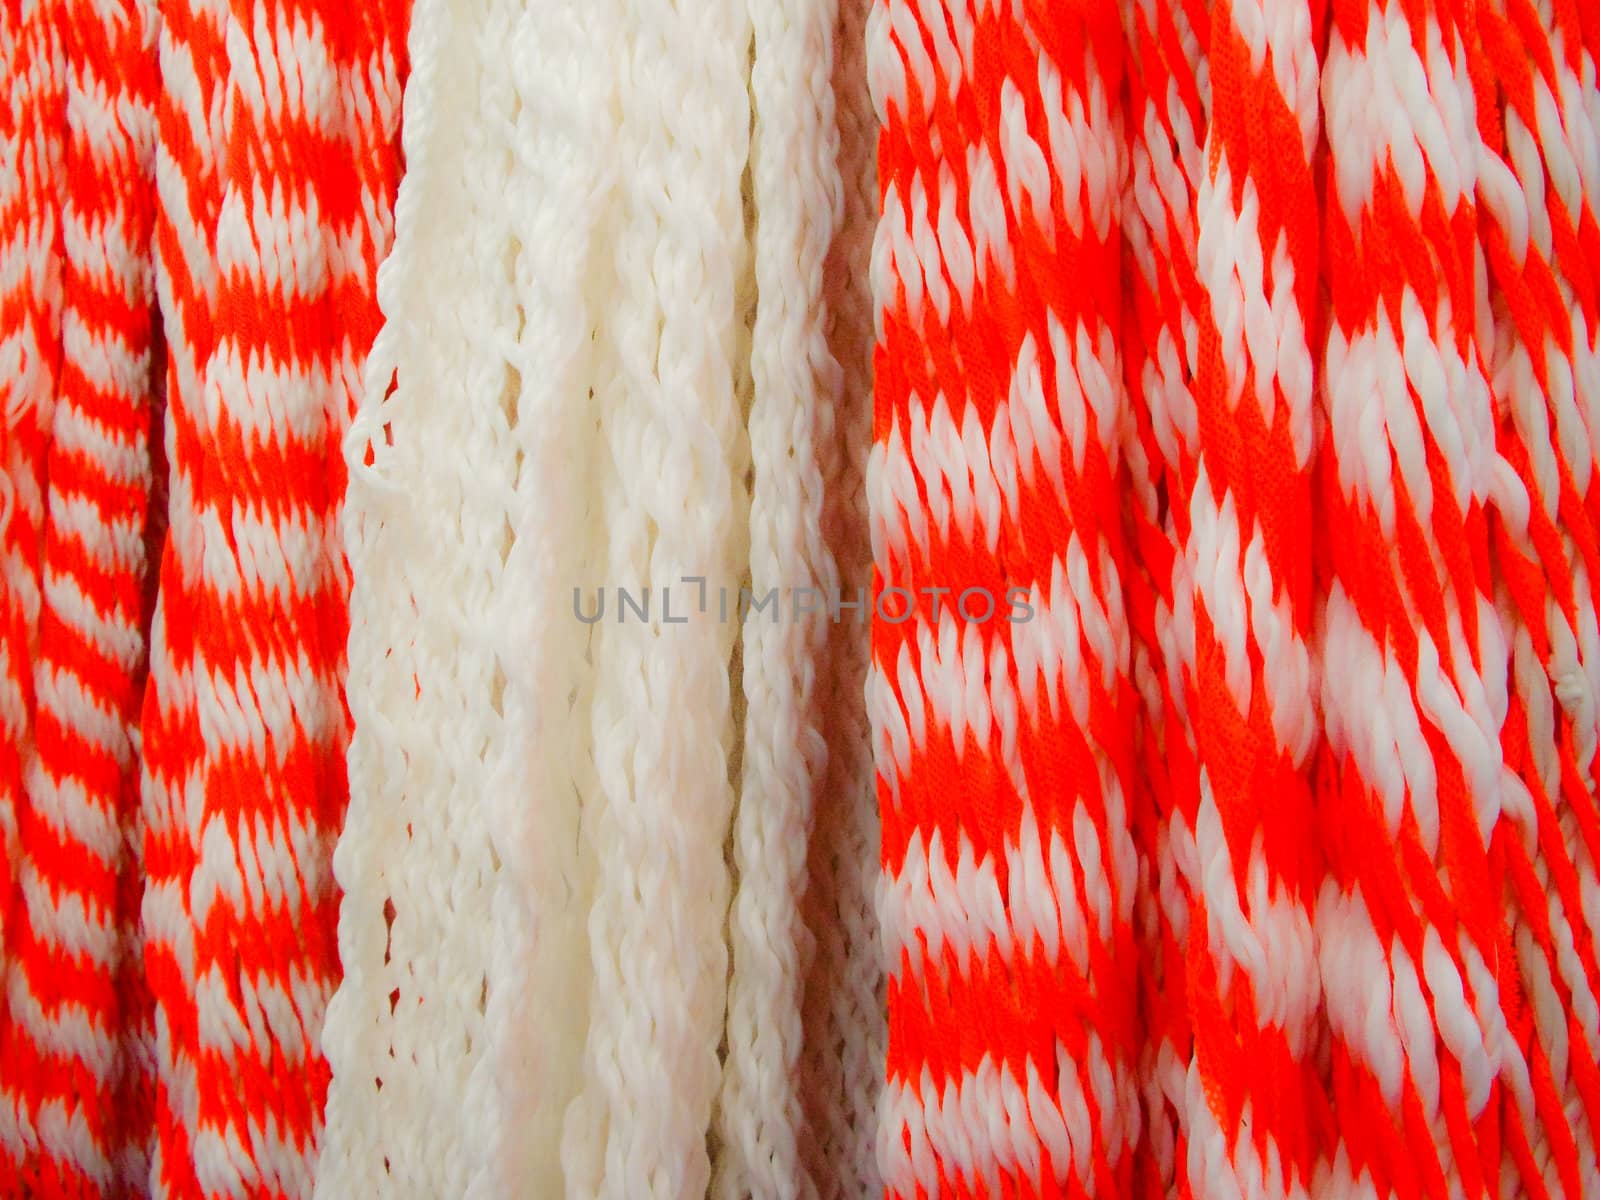 Red & White stripe woolens by emattil